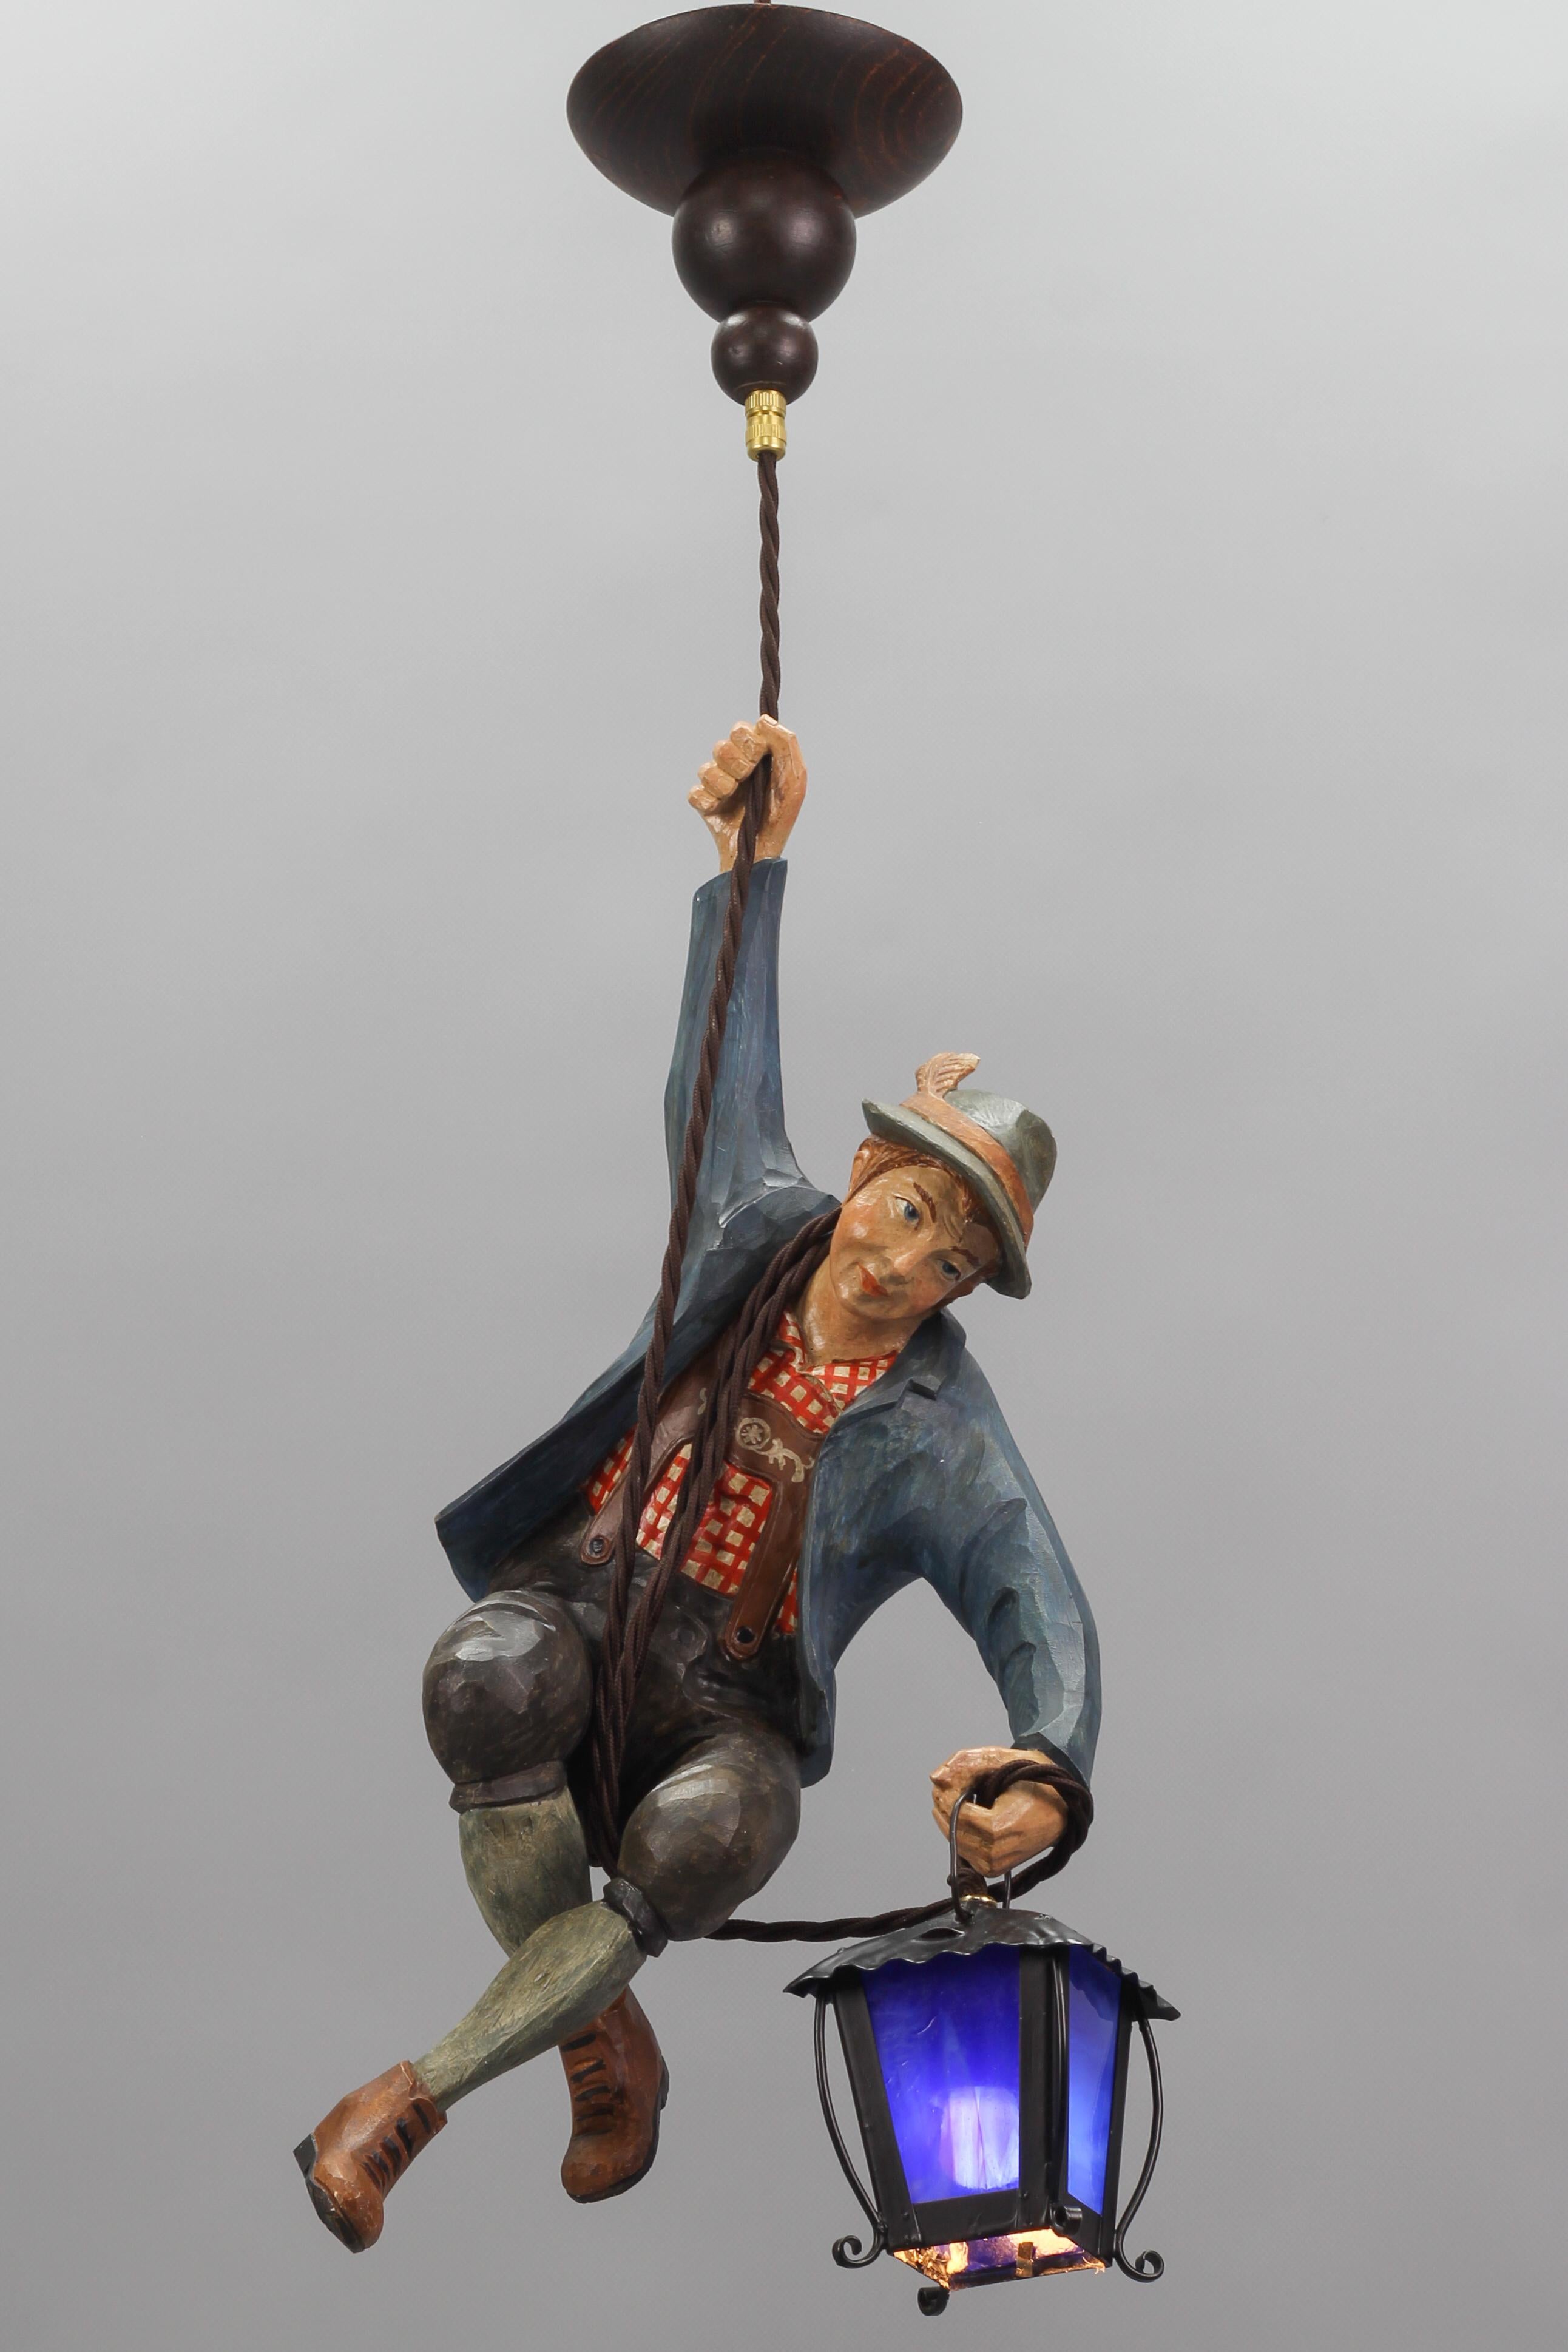 Merveilleuse lampe suspendue allemande présentant une figure sculptée à la main d'un alpiniste souriant portant de magnifiques vêtements traditionnels bavarois peints à la main en bleu, marron, vert, blanc et rouge. Le personnage en bois sculpté